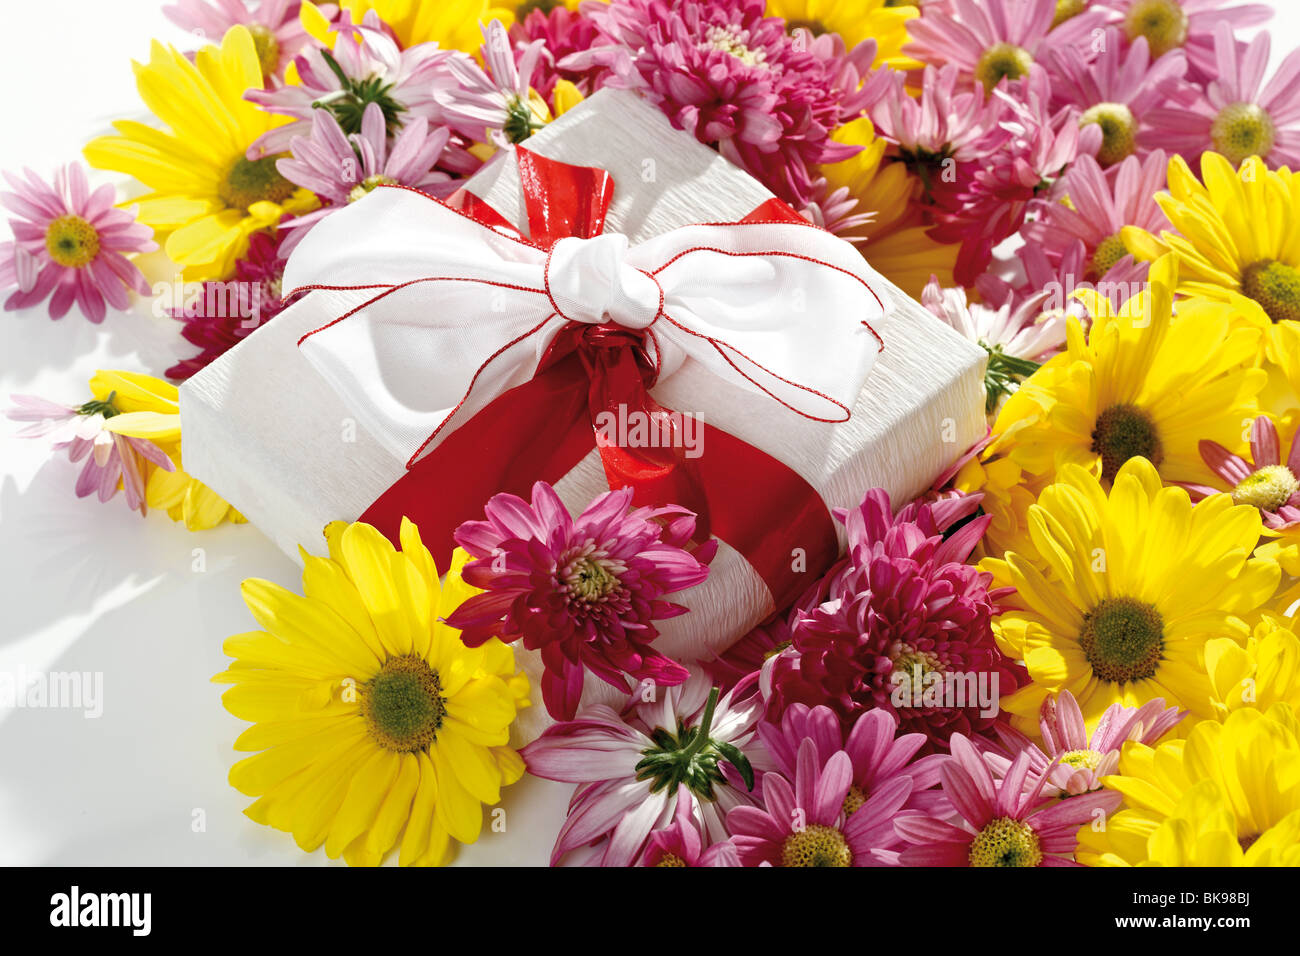 Chrysanthemum (Chrysanthemum), and gift box Stock Photo